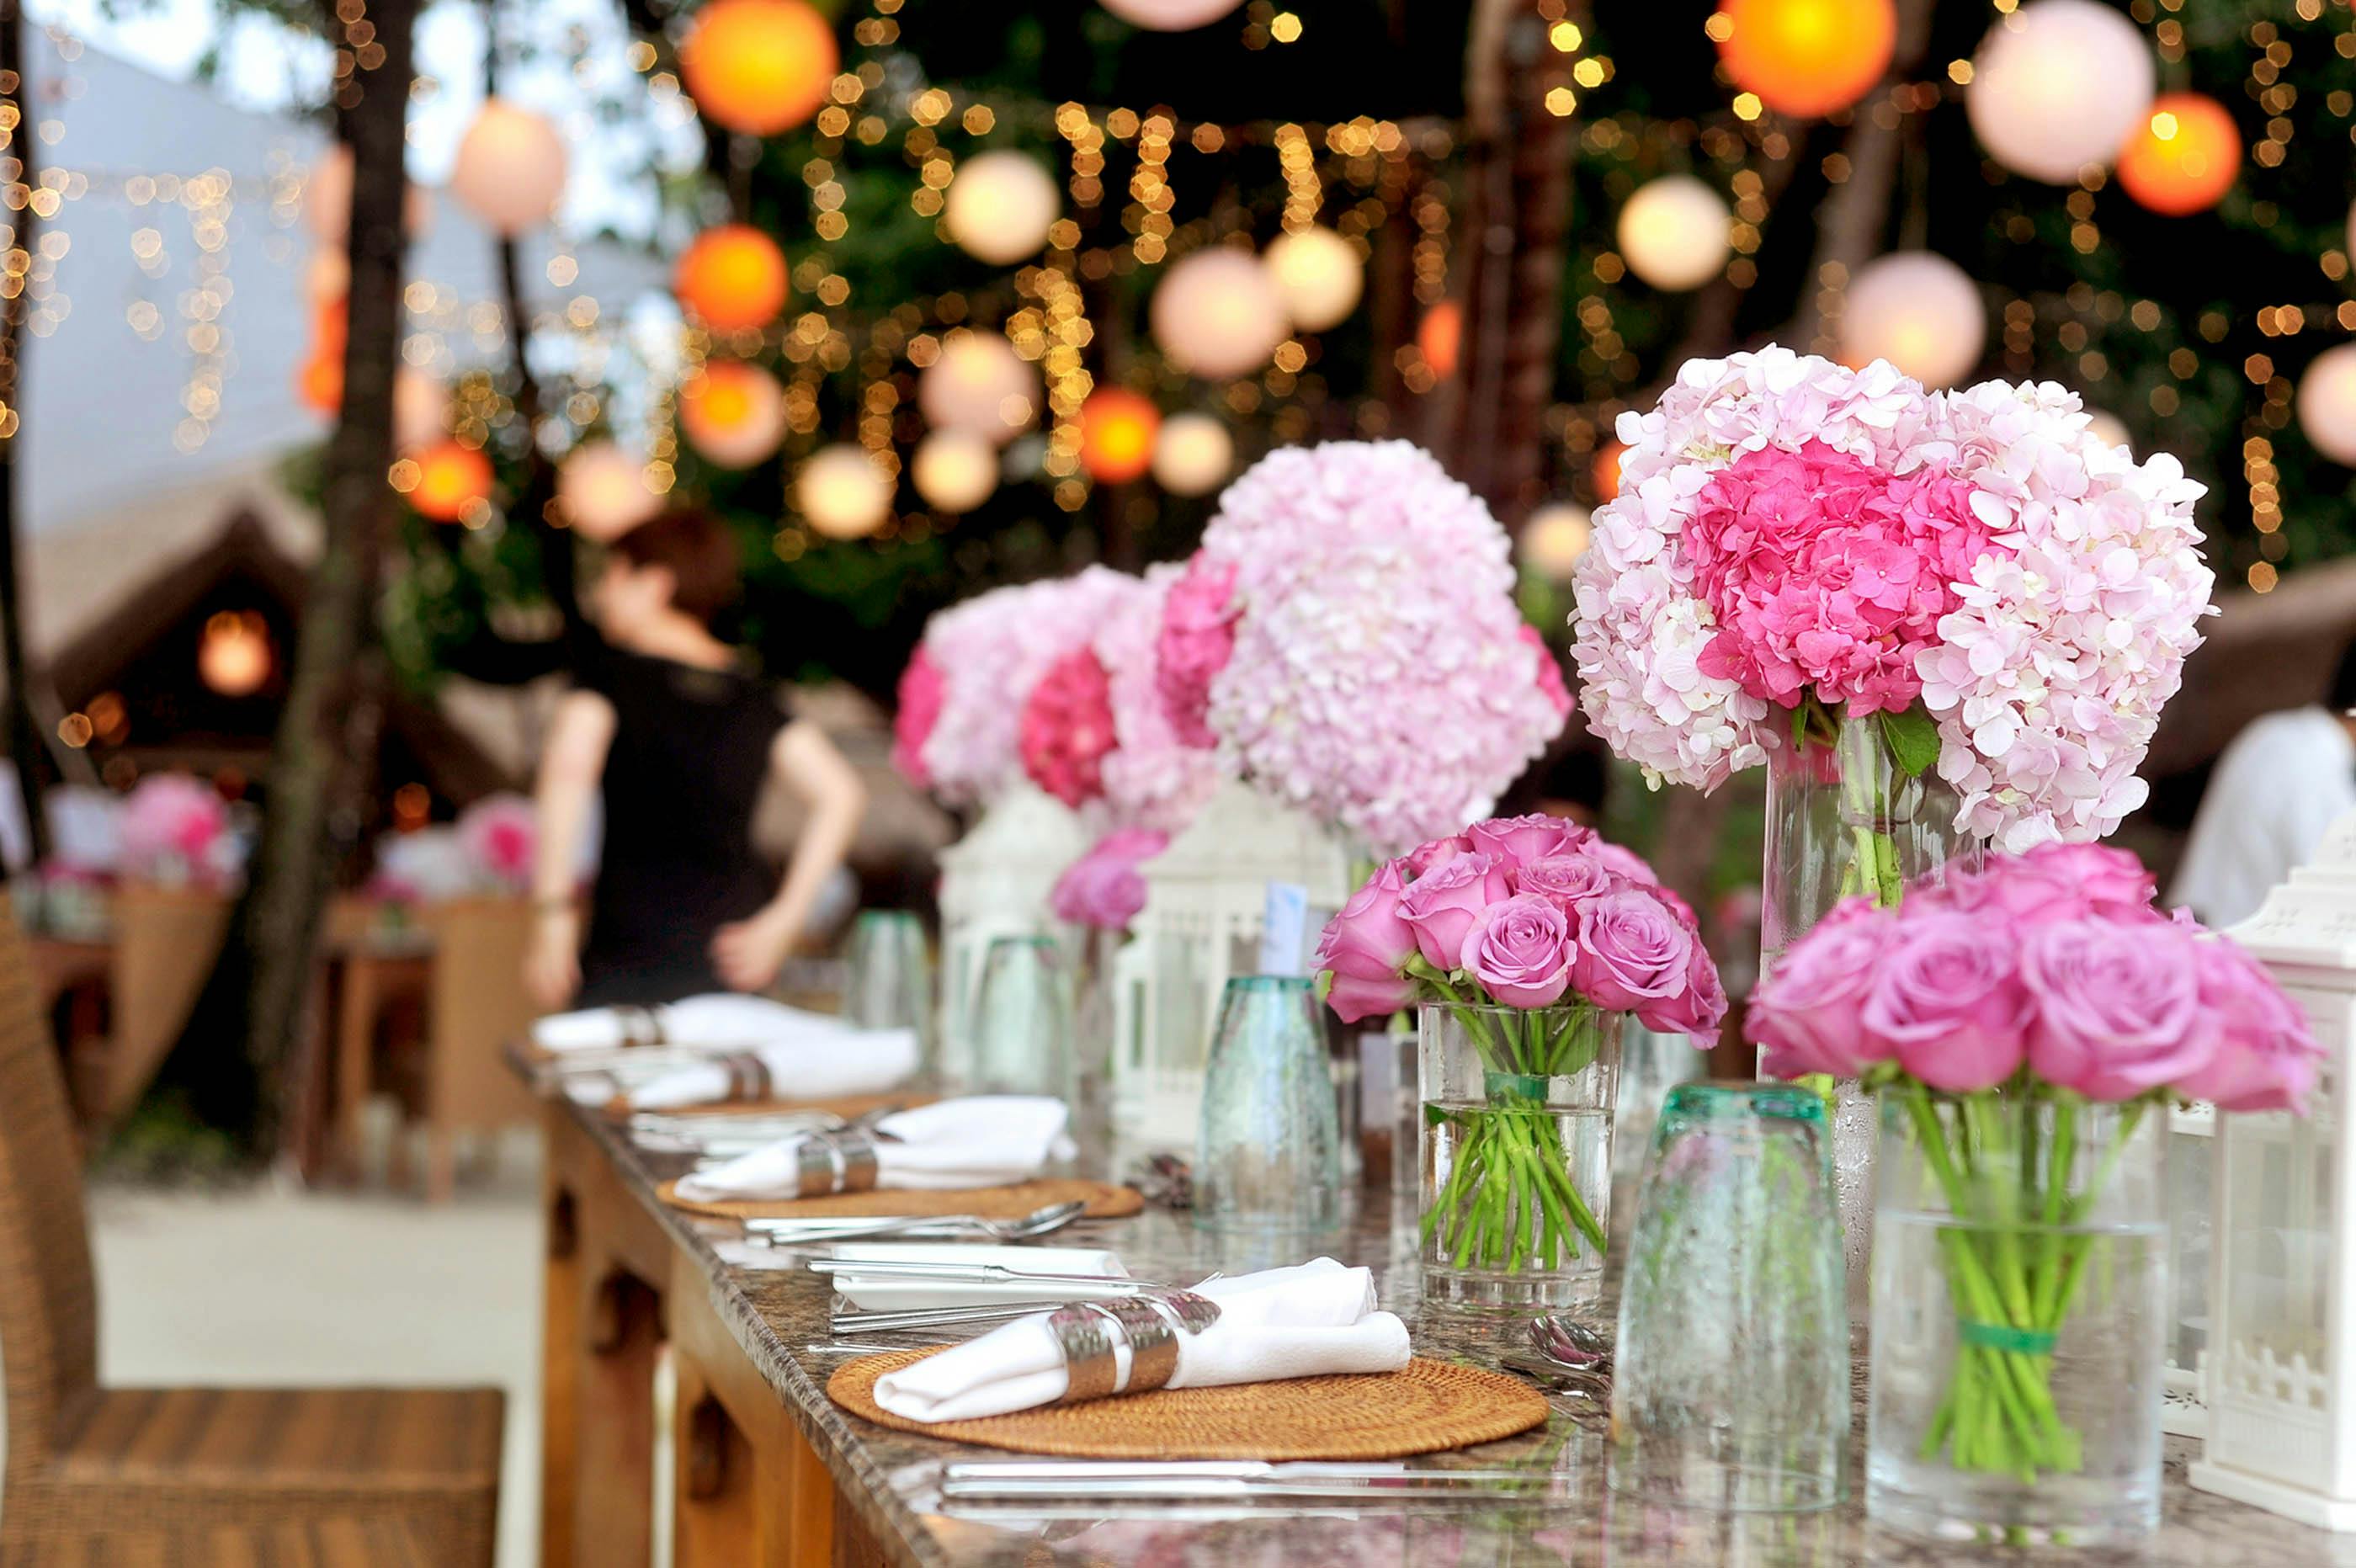 Ein mit Blumen und Tischdekoration geschmückter Veranstaltungsort | Quelle: Pexels